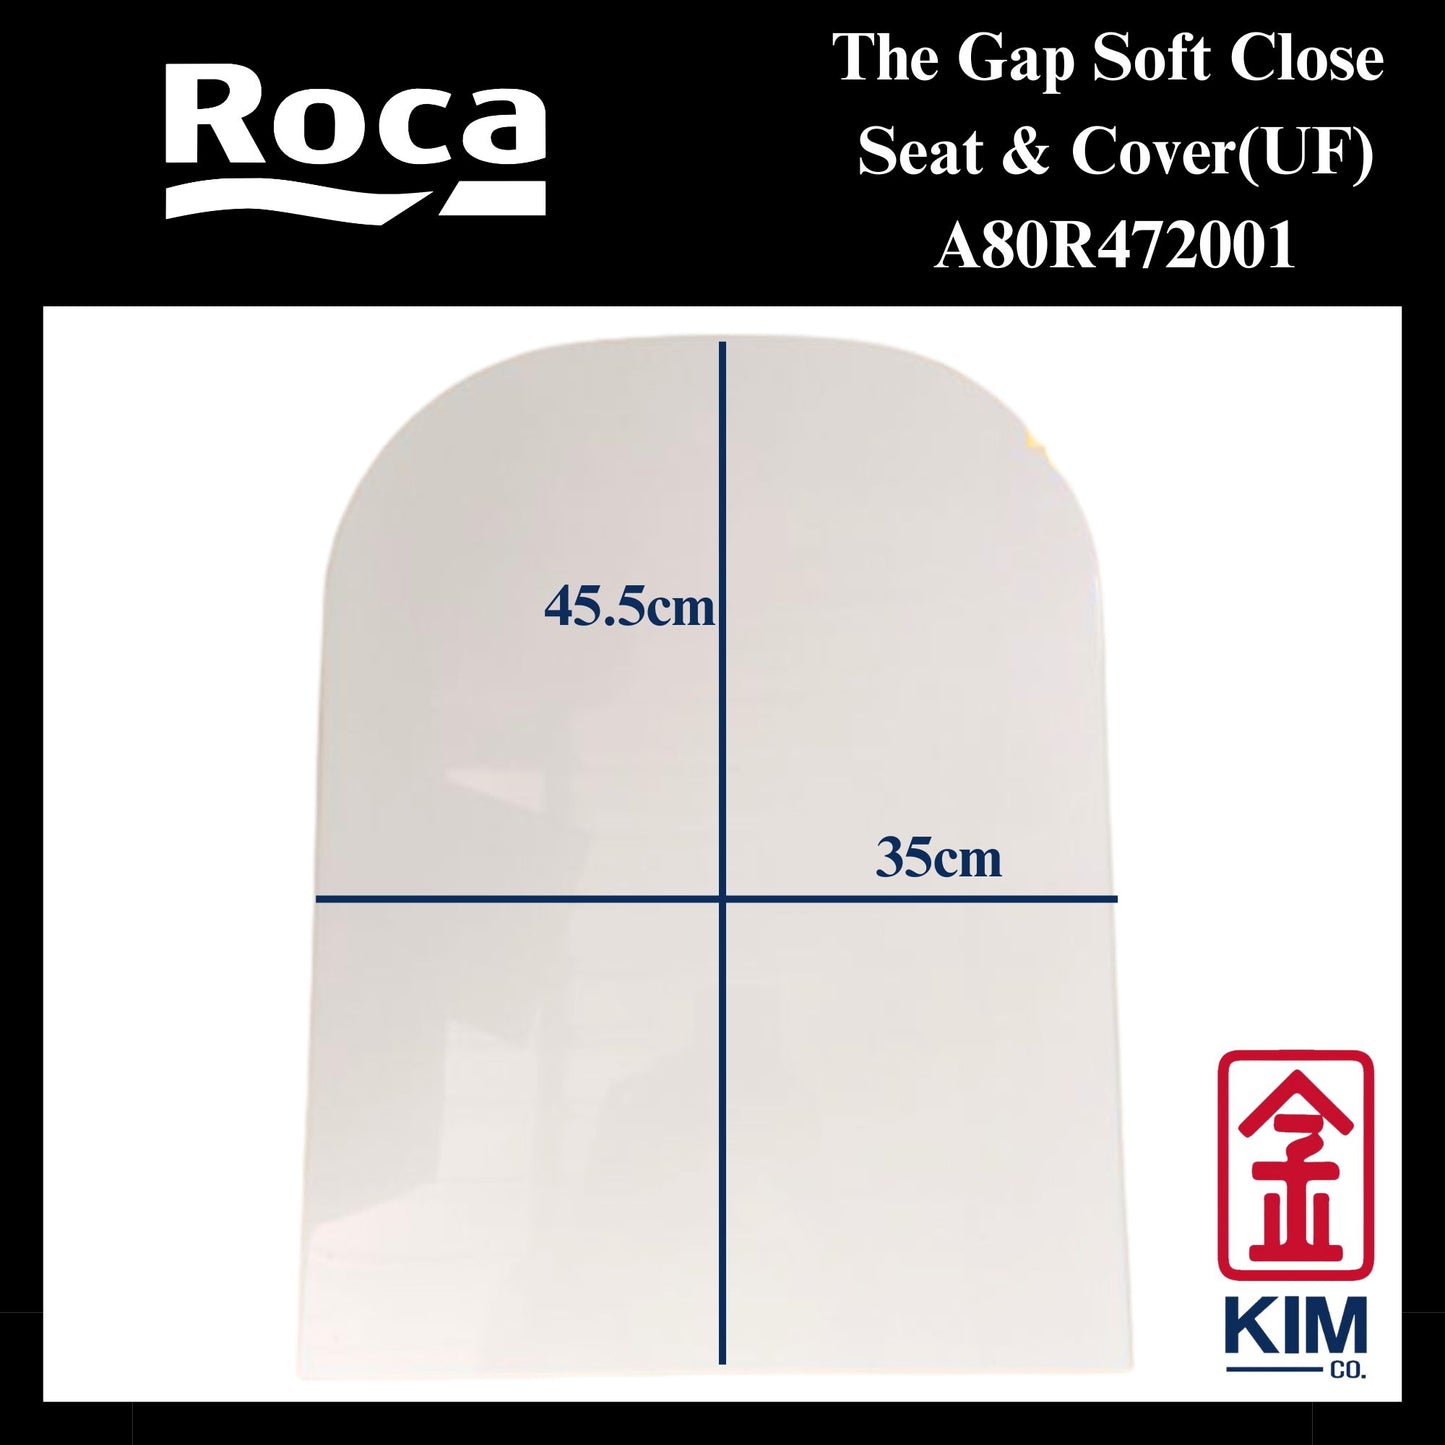 Roca The Gap Soft Close Seat & Cover (UF)(A80R472001)